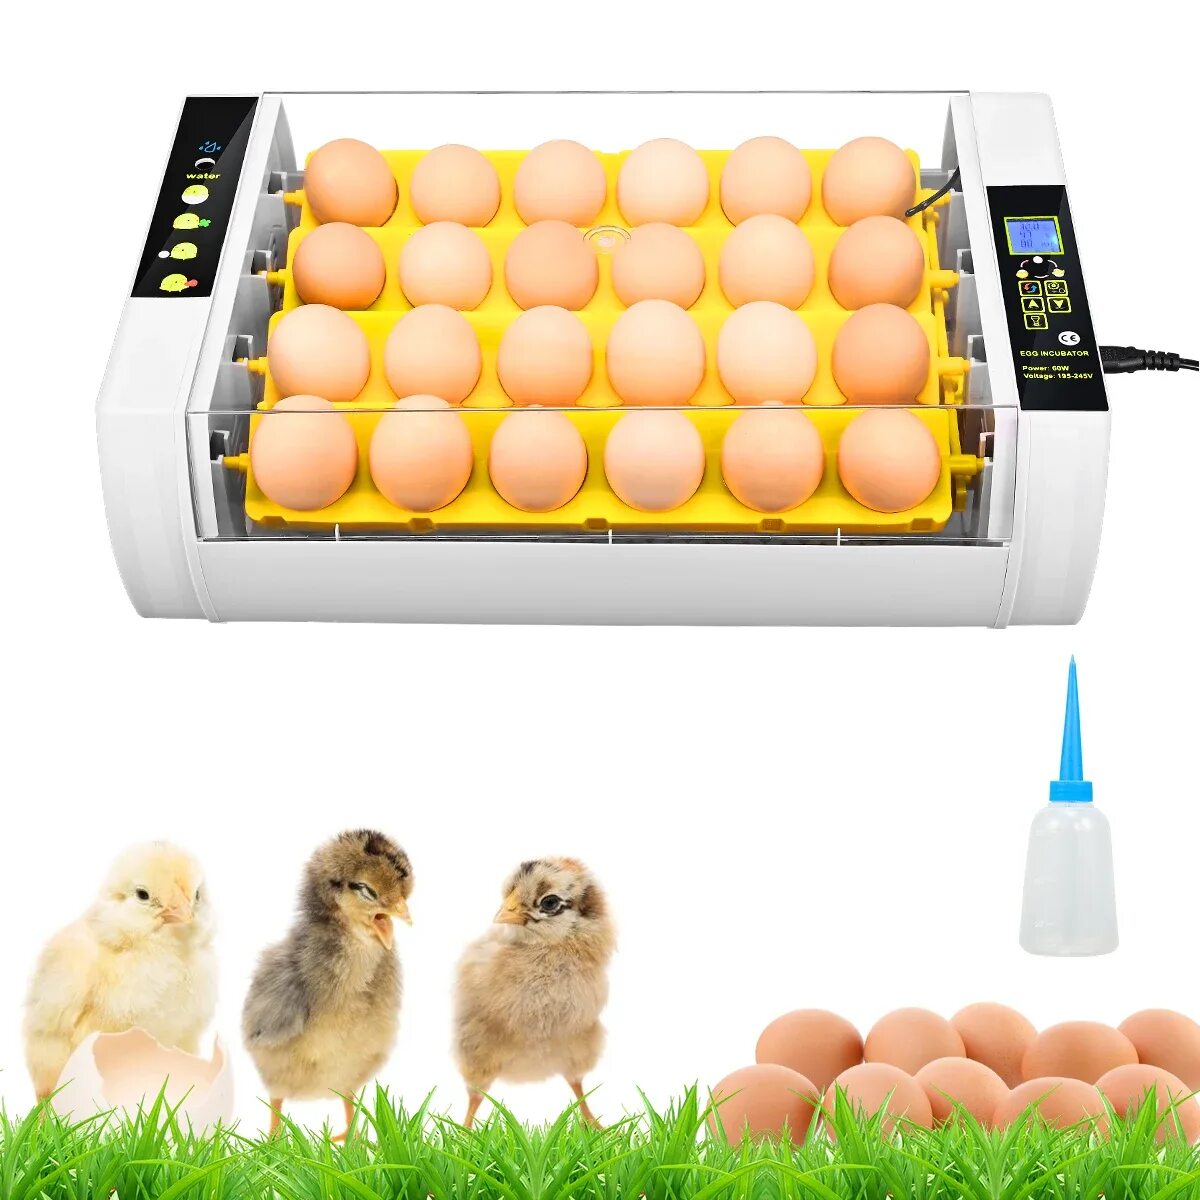 Какой инкубатор автоматический. Инкубатор Egg incubator. Инкубатор для яиц Egg incubator QC Pass 04. Fully Automatic Egg incubator. Инкубатор для яиц fully Automatic Egg Incubato.